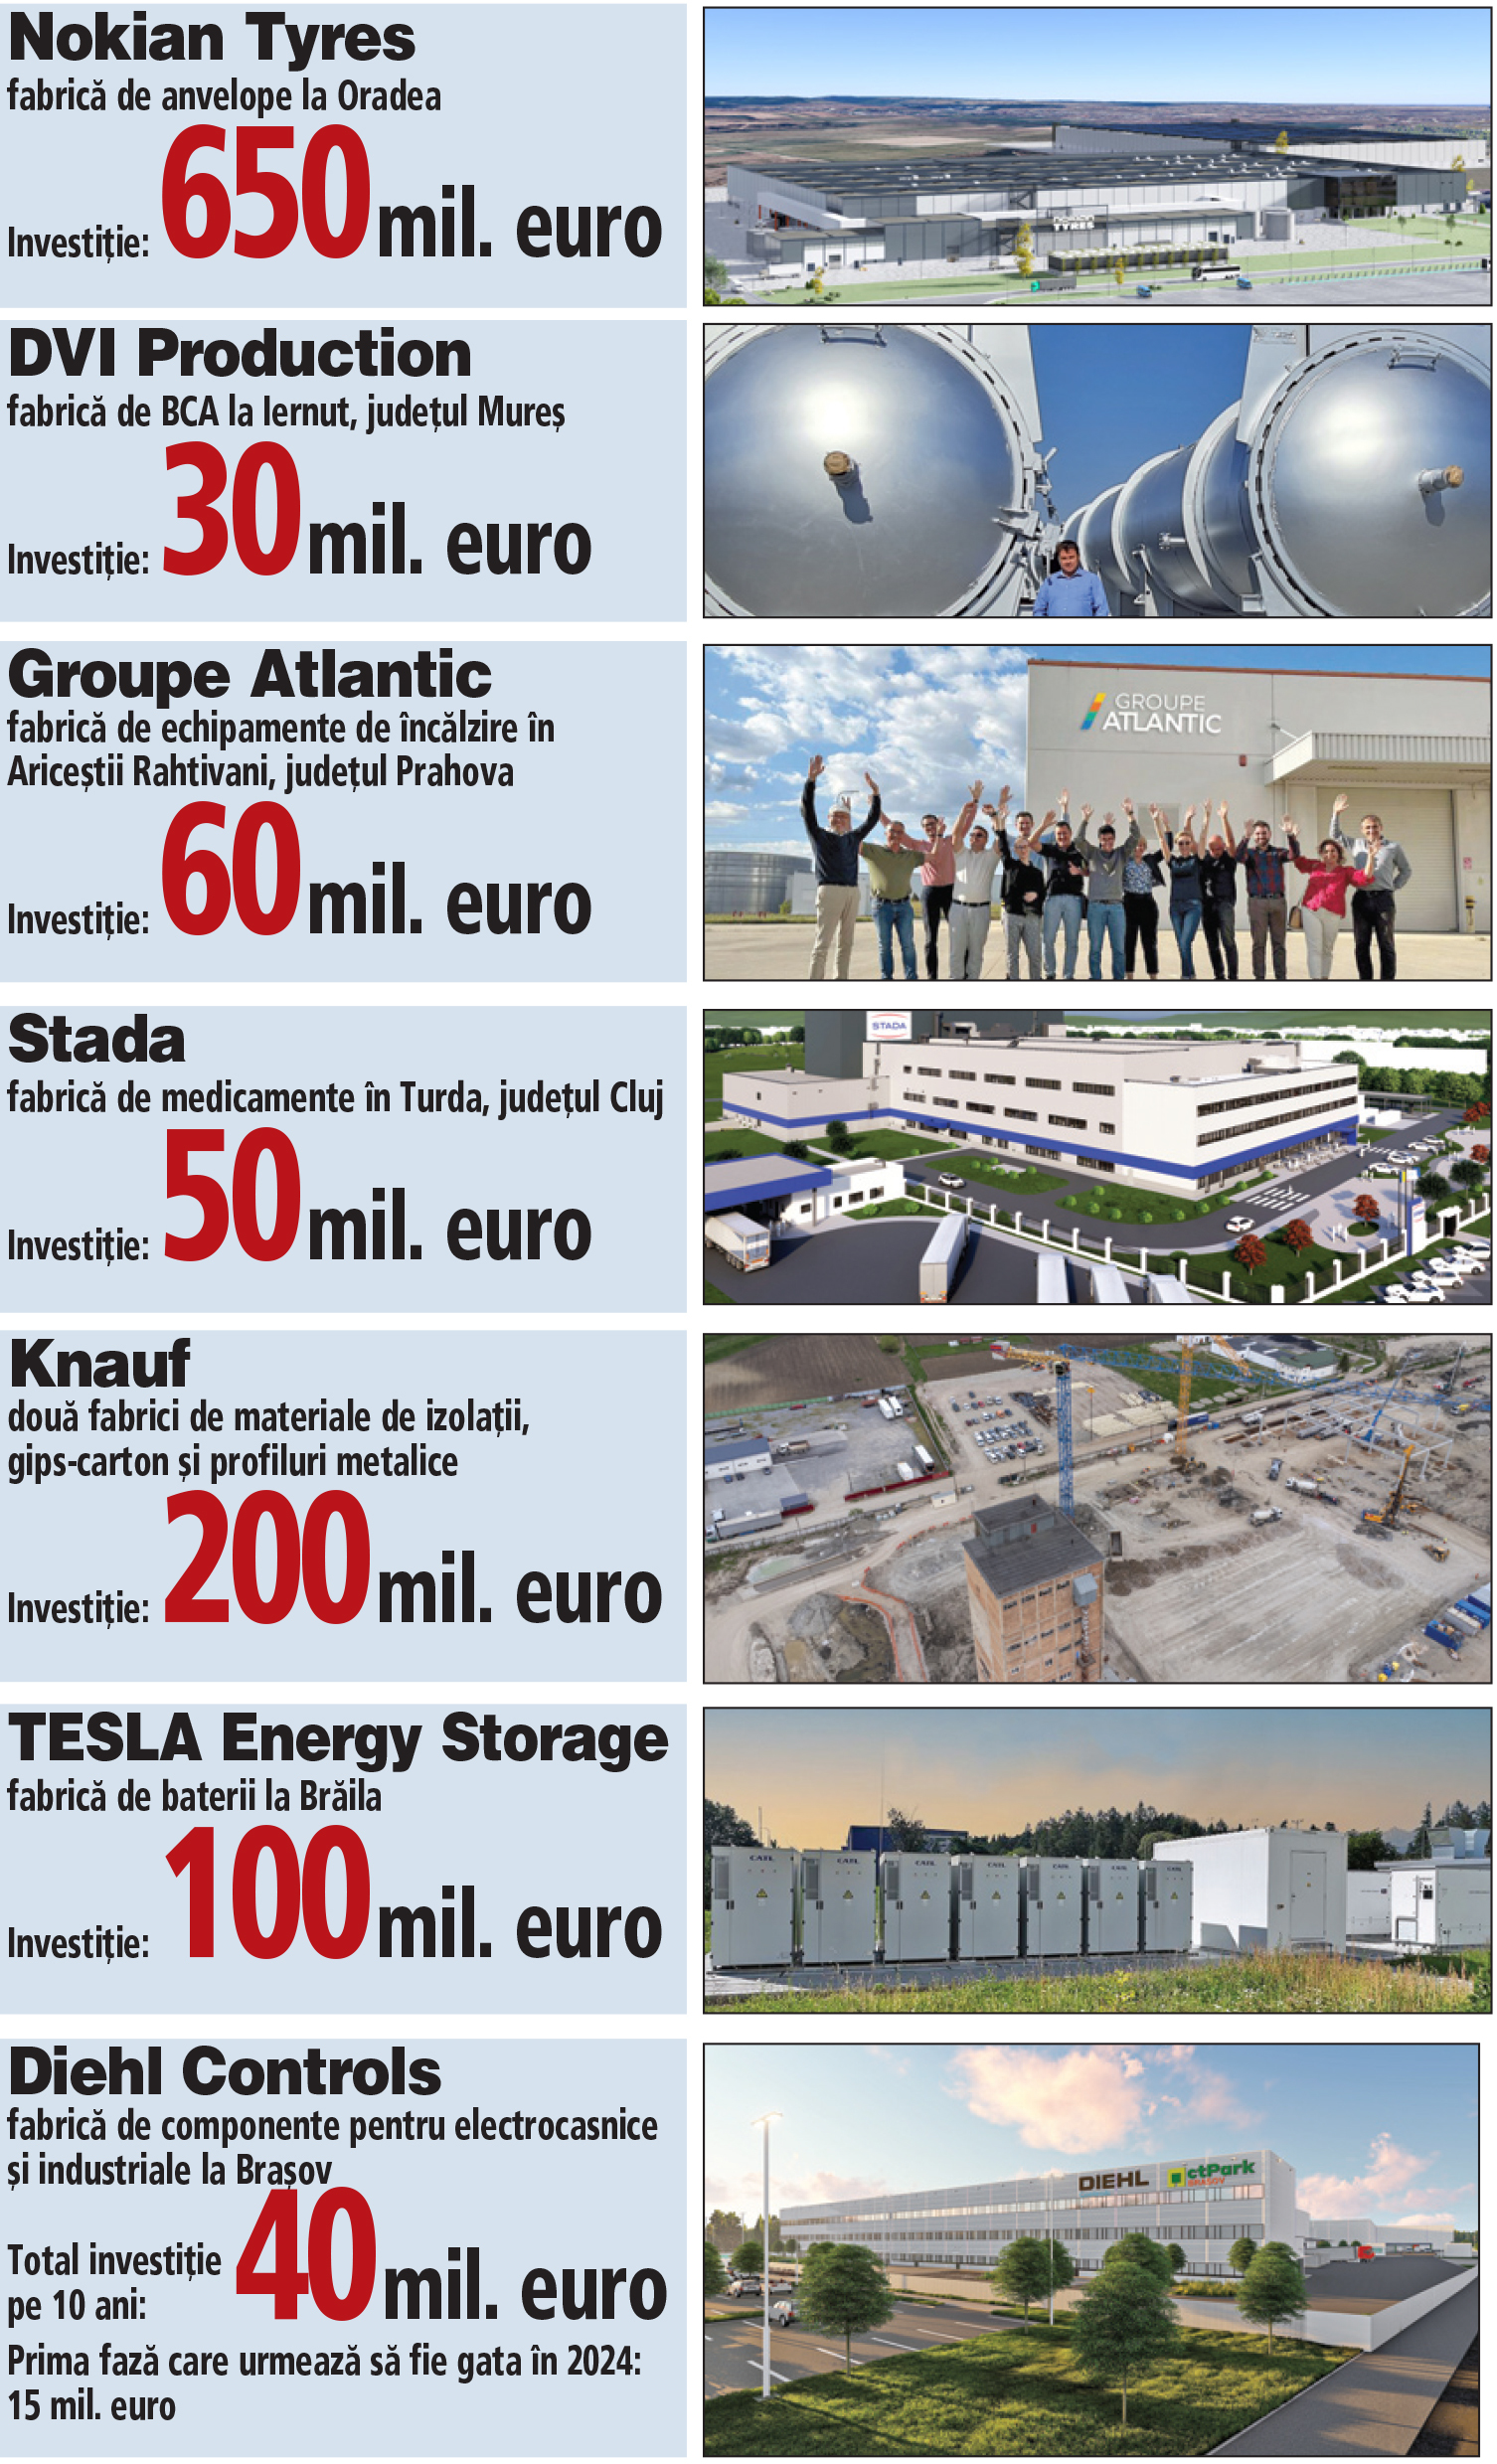 Şapte fabrici cu o valoare cumulată a investiţiilor de 1,2 miliarde de euro încep producţia în 2024. Toate aceste investiţii mari vor crea în 2024 peste 1.000 de locuri de muncă în industrie la nivelul întregii ţări